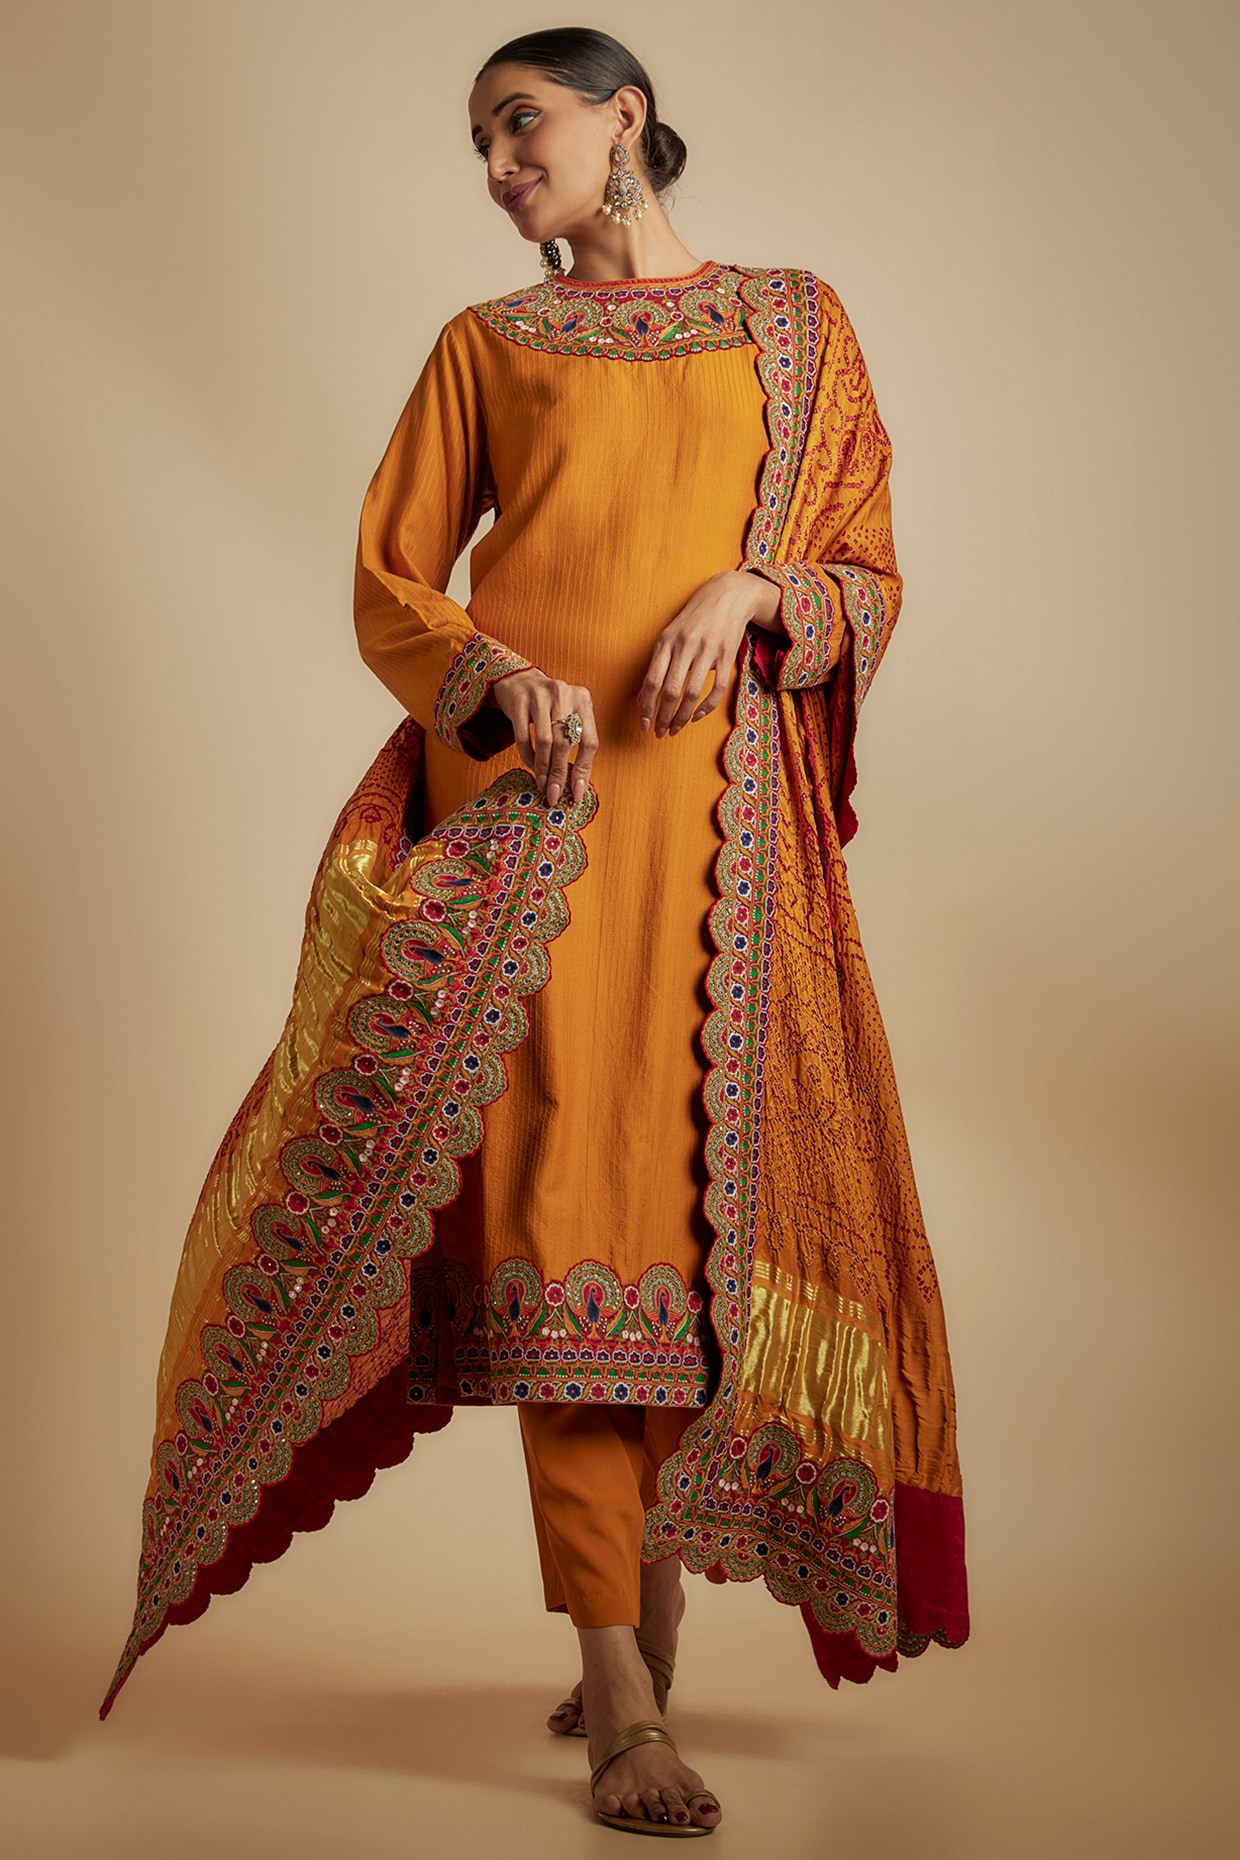 Indian Bollywood Mustard Yellow & Red Printed Kurta Kurti Dress Tunic  Pakistani | eBay